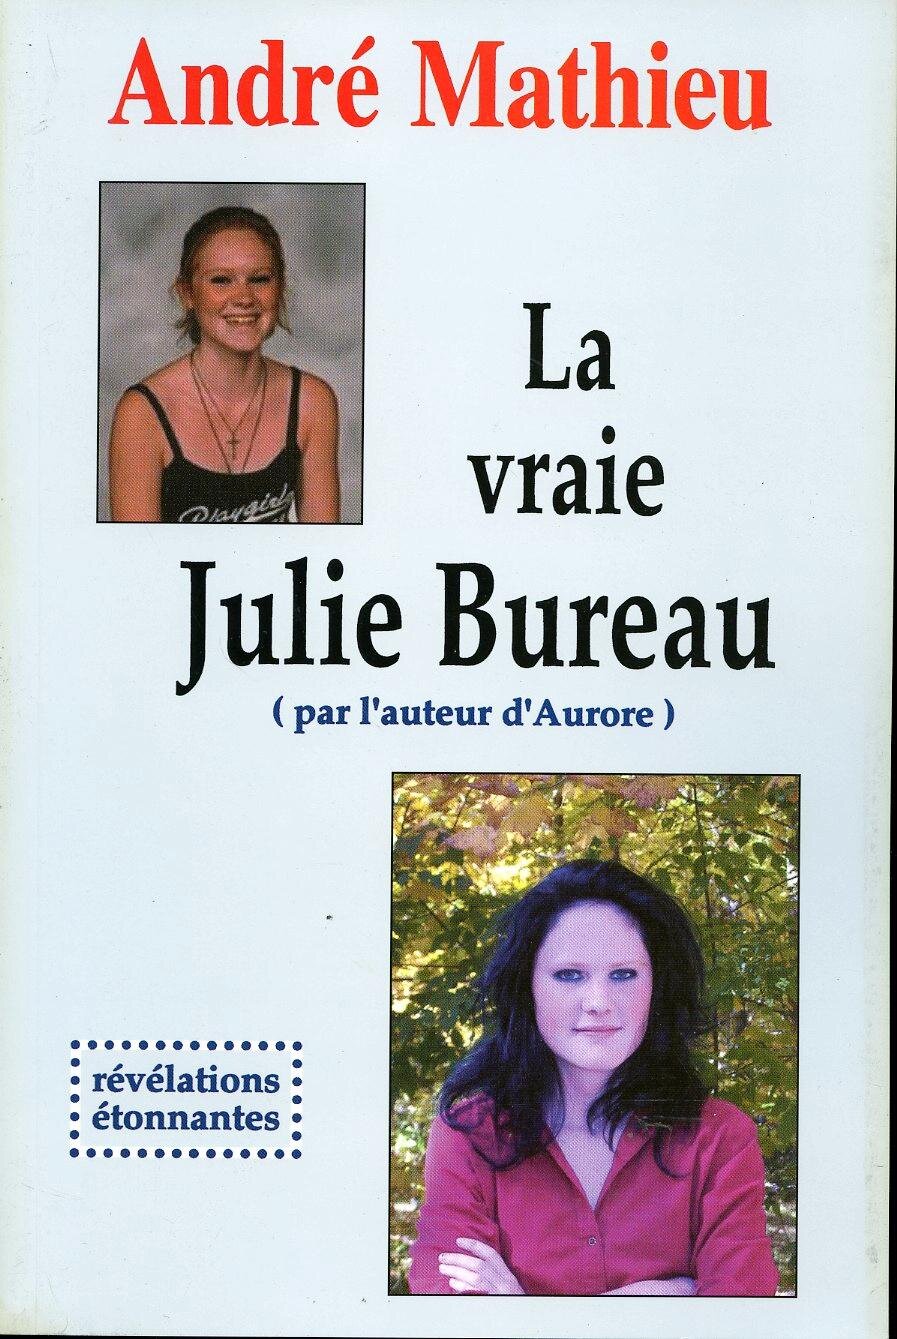  Biographie de Julie Bureau écrite par l’auteur André Mathieu. 